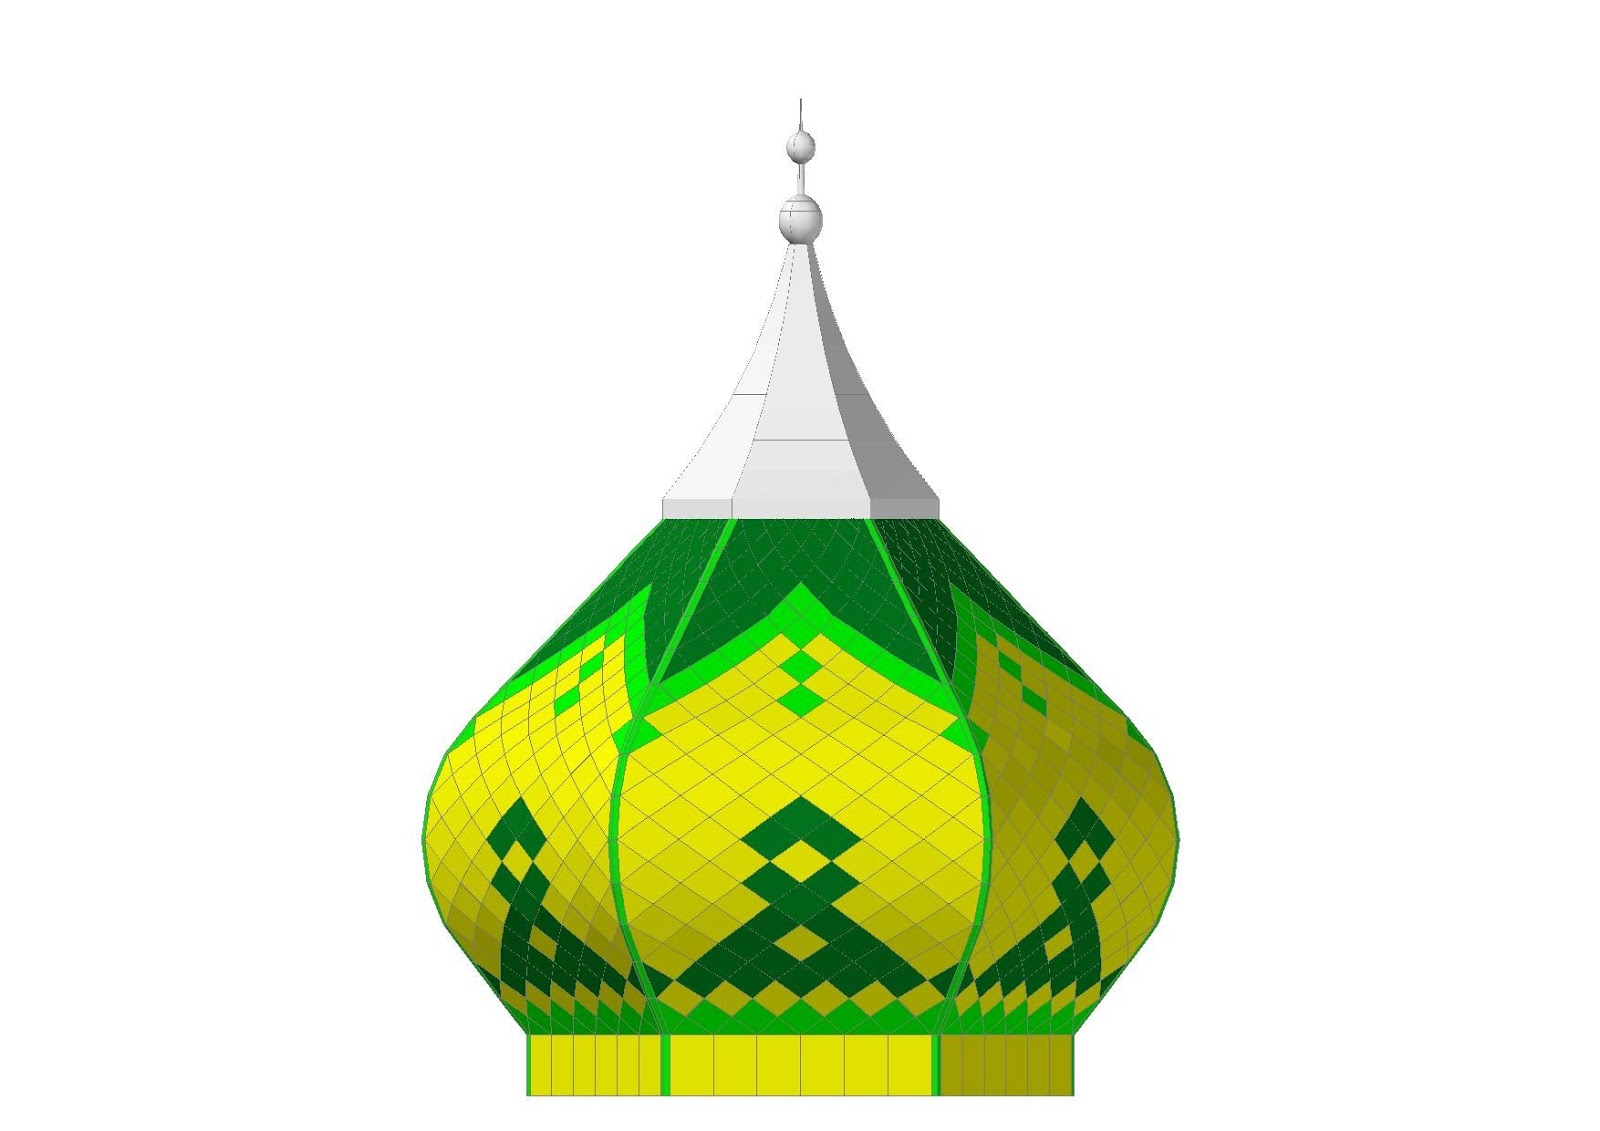  Gambar  Desain Kubah  Masjid  KONTRAKTOR ATAP KUBAH  MASJID  